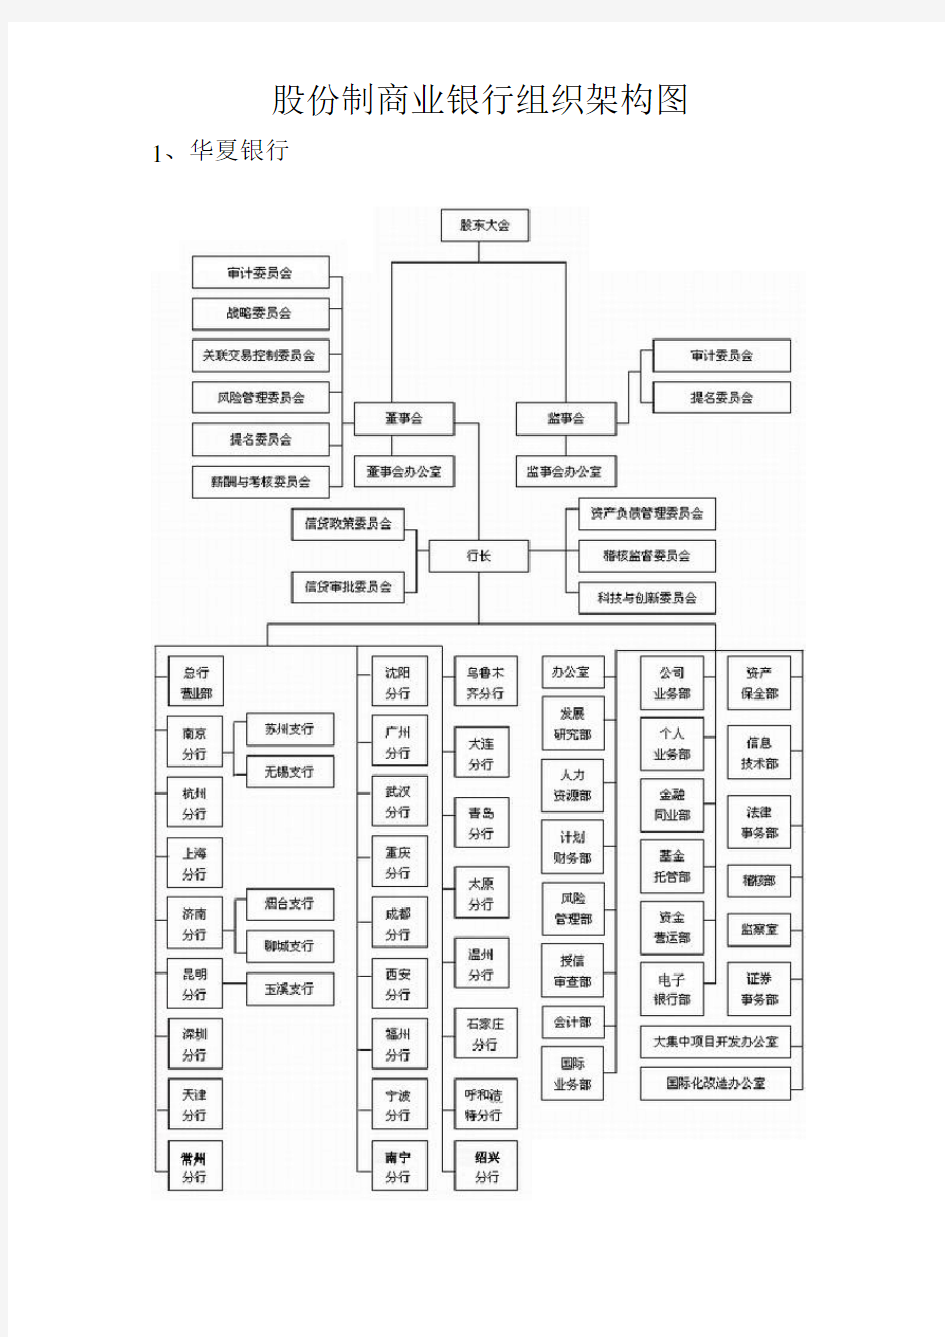 2013商业银行的组织架构图